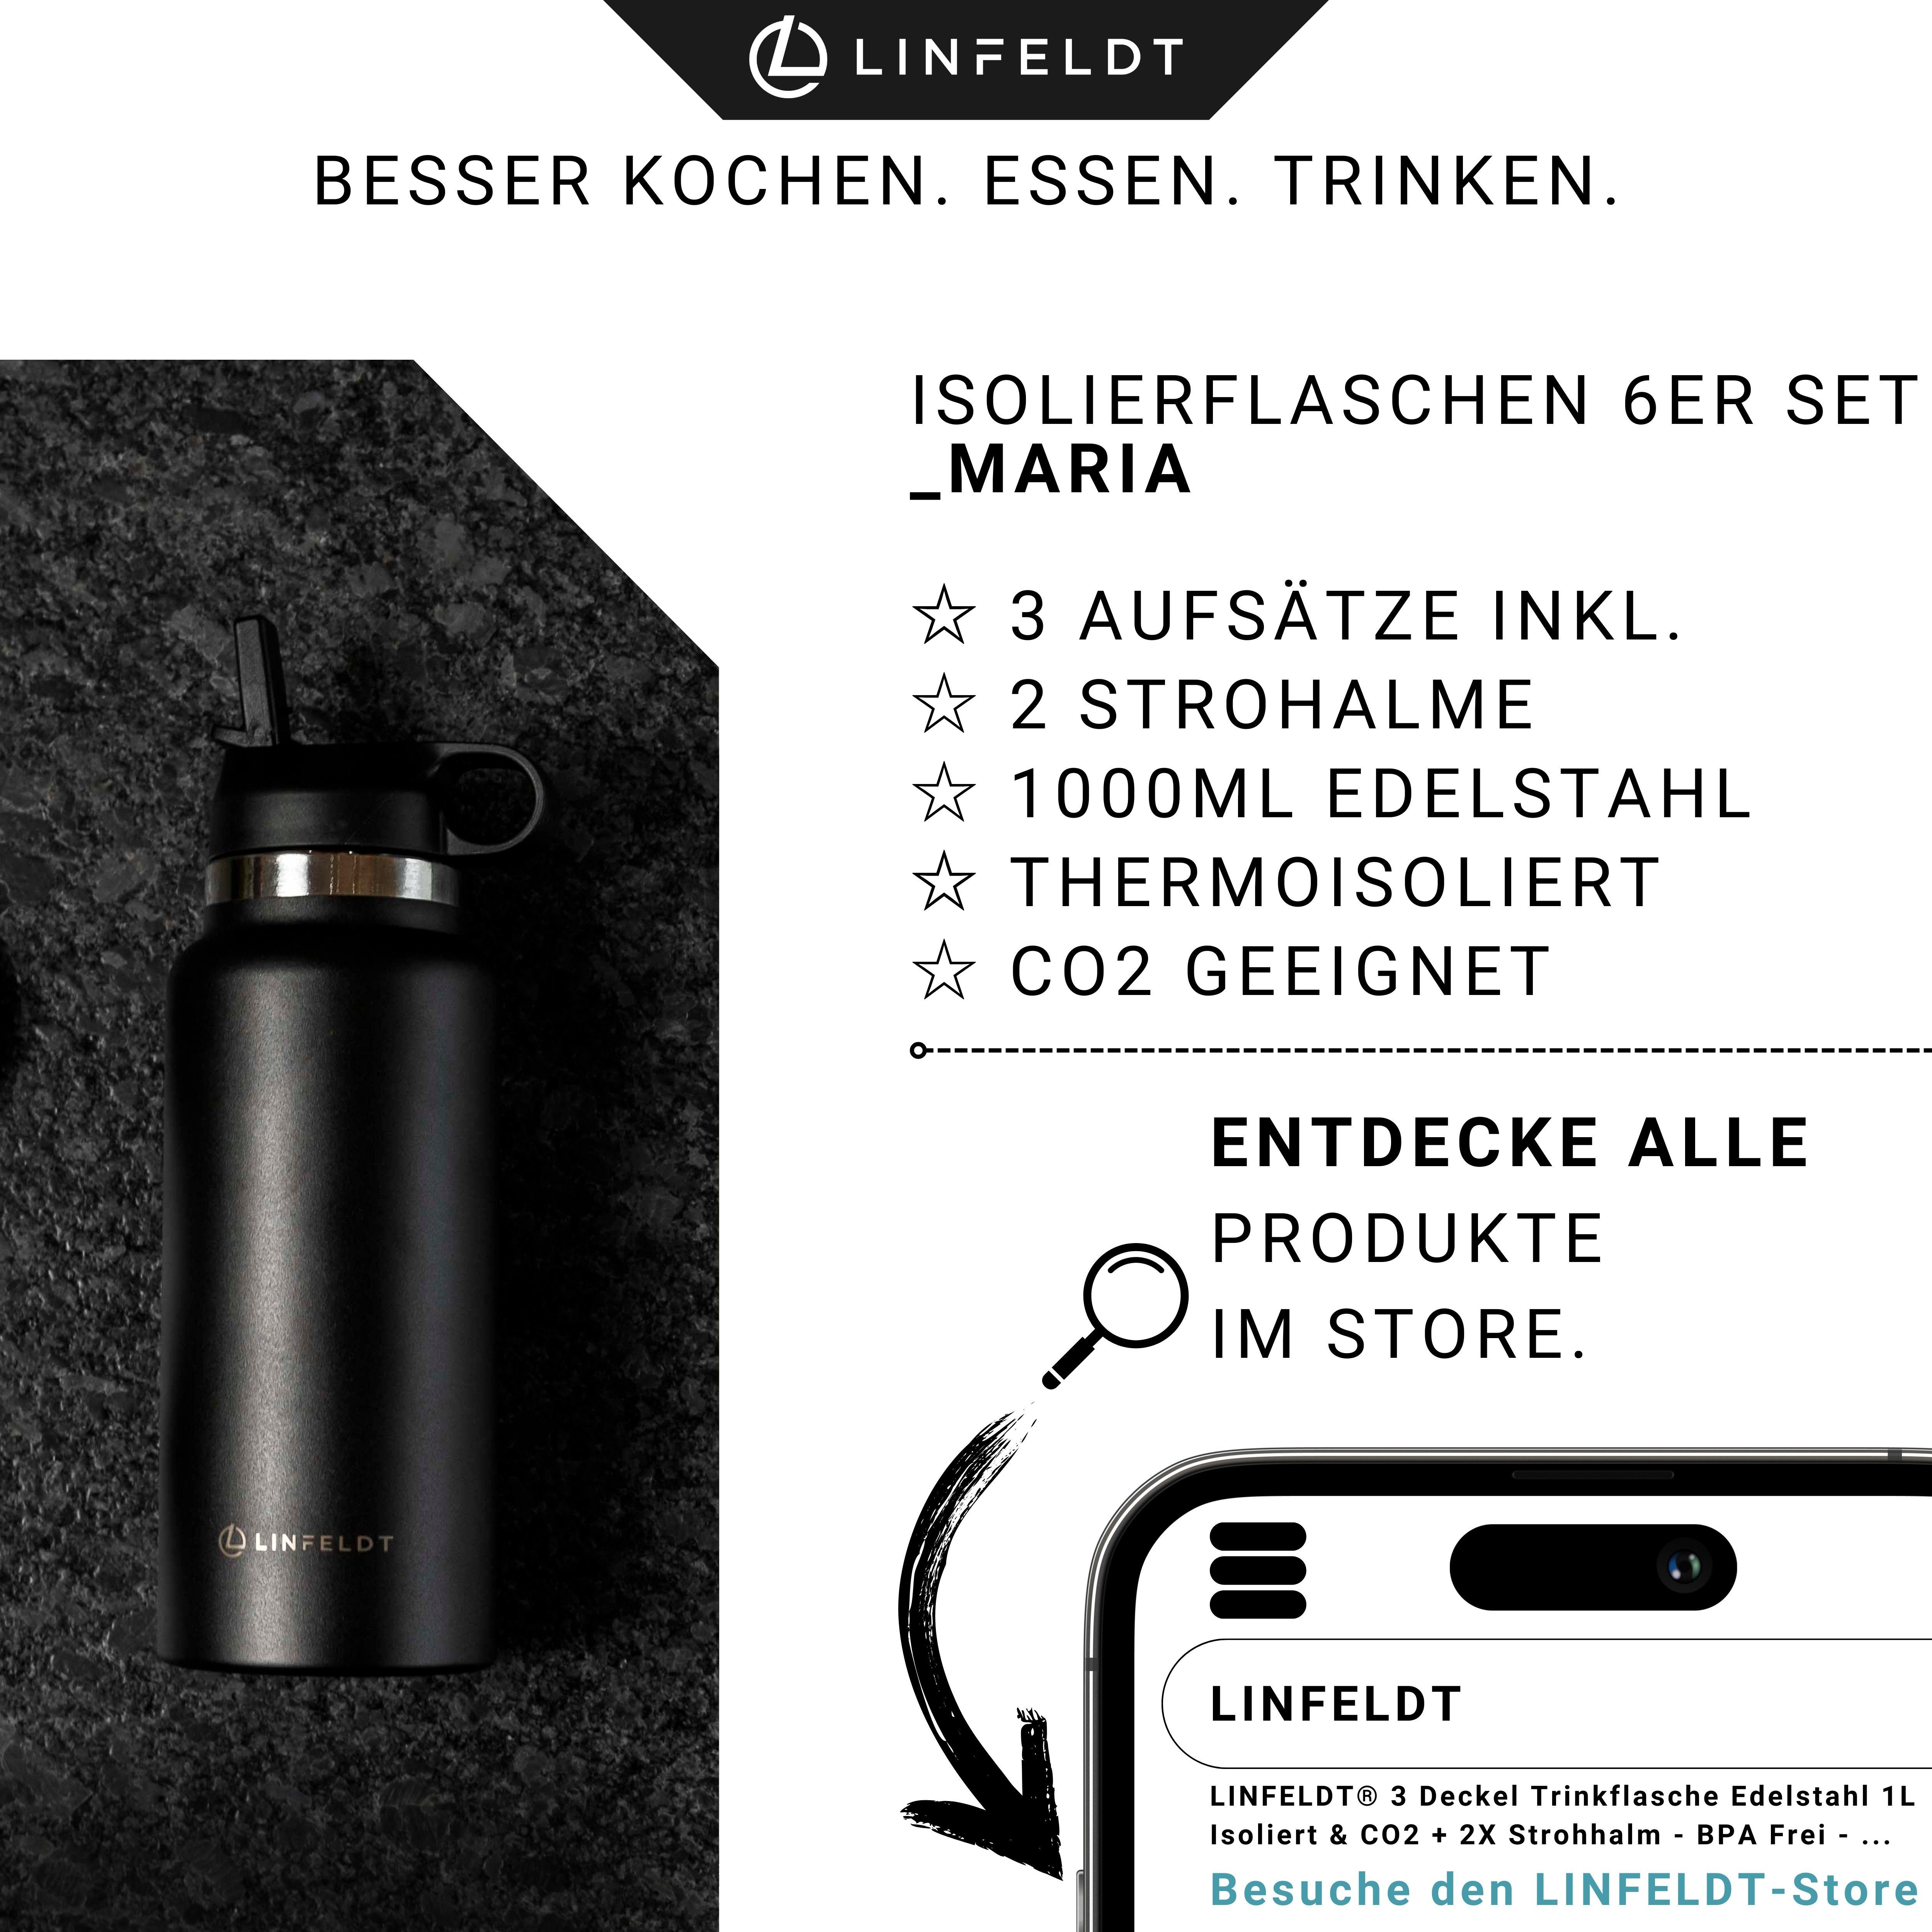 1000ml Schwarz 12H Deckeln + CO2 mit 3 Trinkflasche Heiß, Kalt 2 LINFELDT 24H 3 Aufsätze & Ready 2X Strohalm + Strohhalme